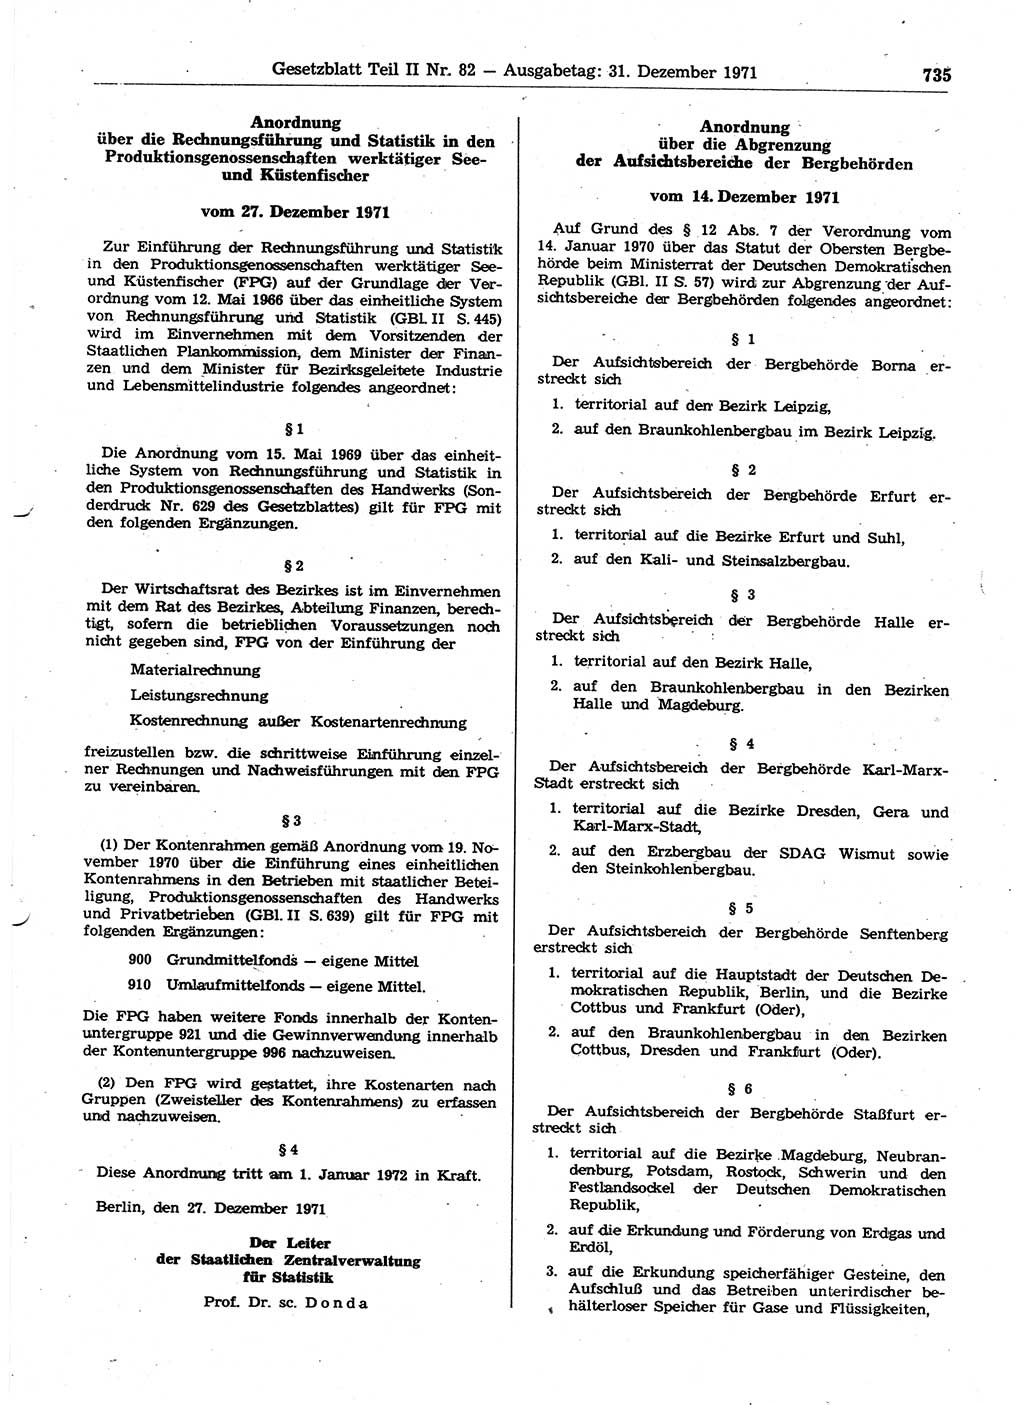 Gesetzblatt (GBl.) der Deutschen Demokratischen Republik (DDR) Teil ⅠⅠ 1971, Seite 735 (GBl. DDR ⅠⅠ 1971, S. 735)